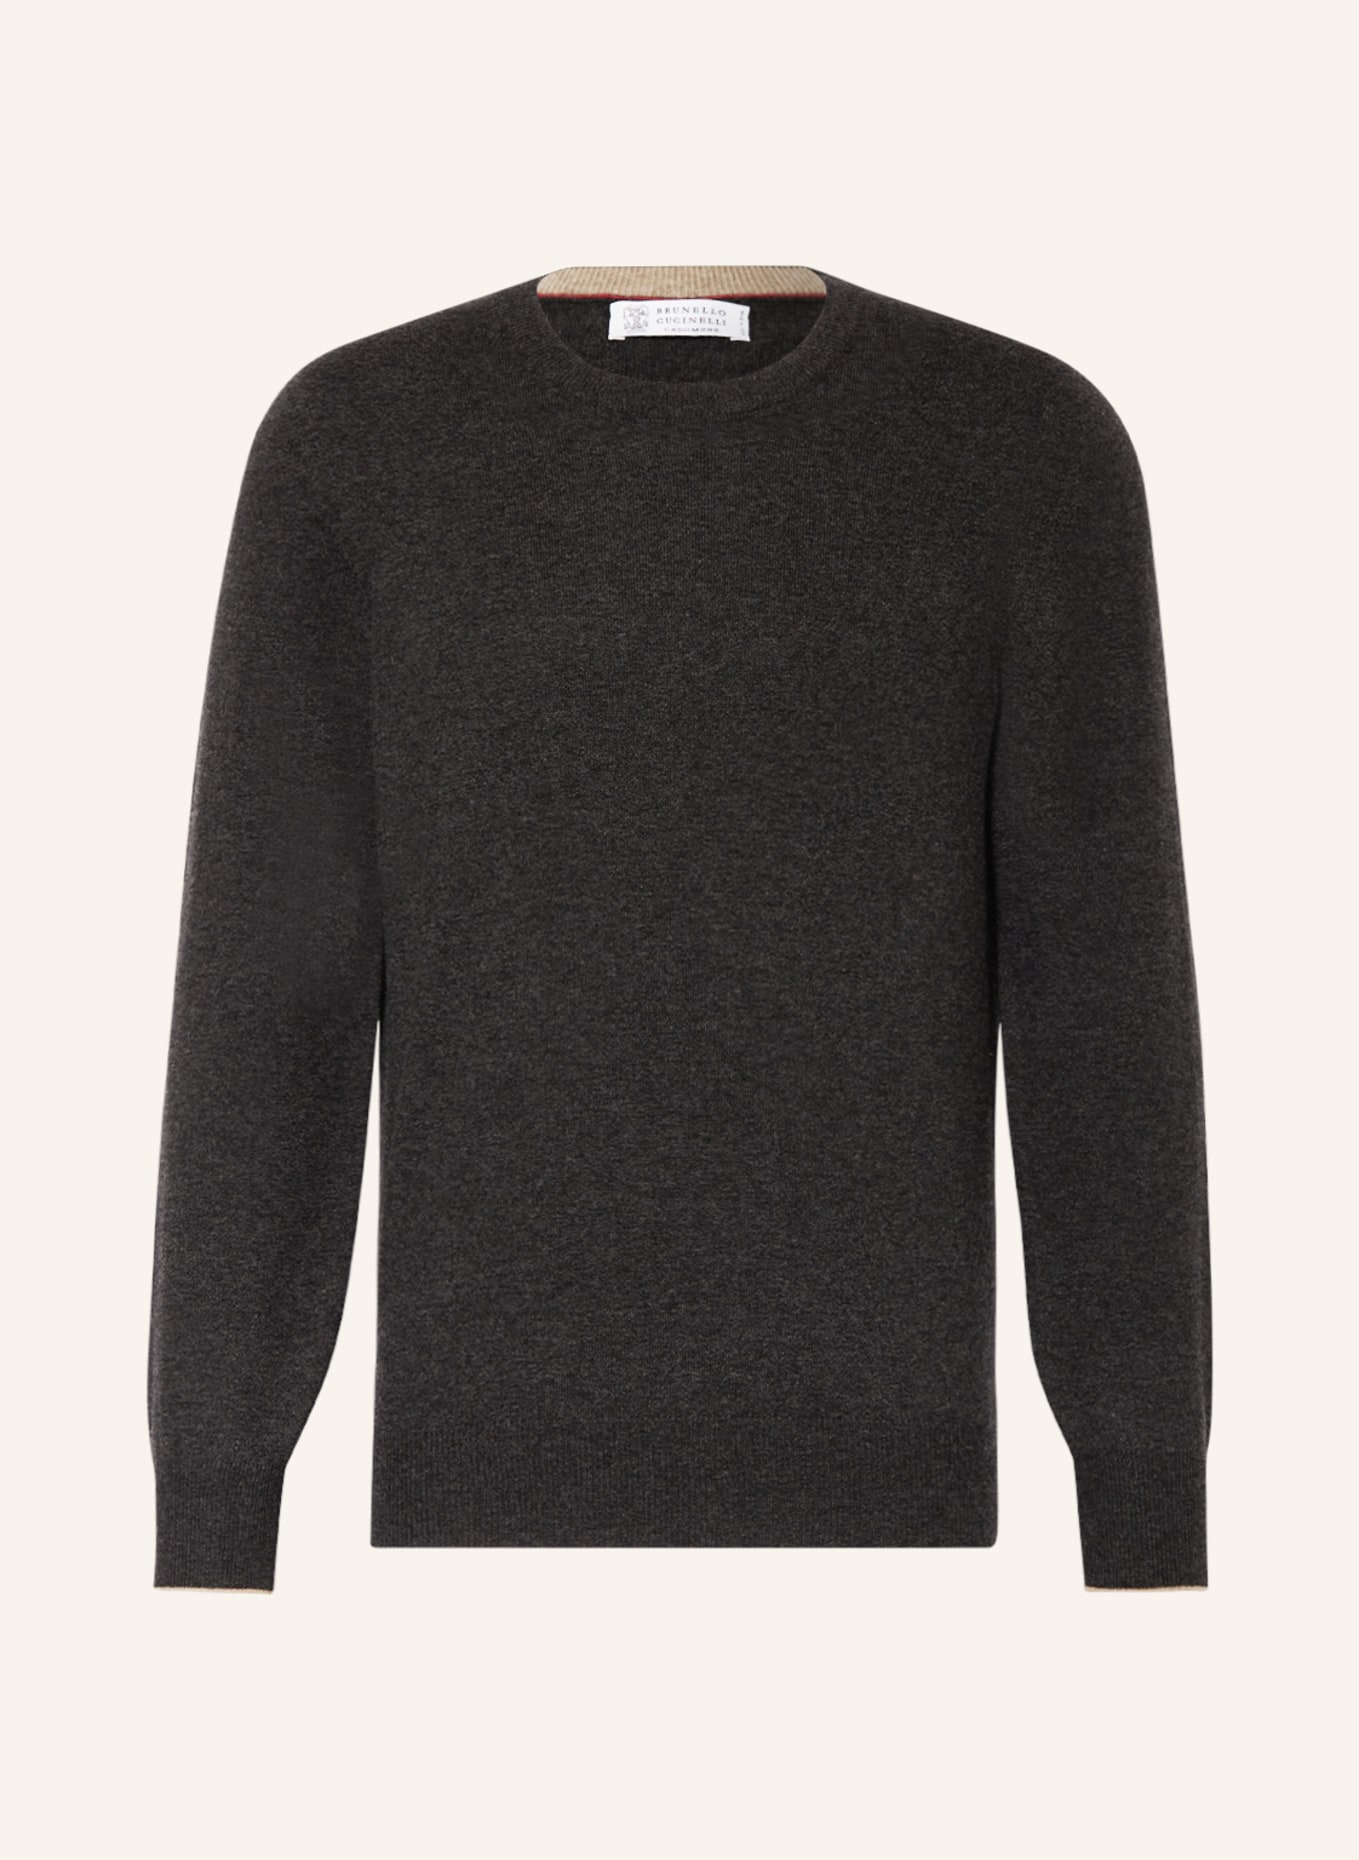 BRUNELLO CUCINELLI Cashmere-Pullover, Farbe: DUNKELGRAU (Bild 1)